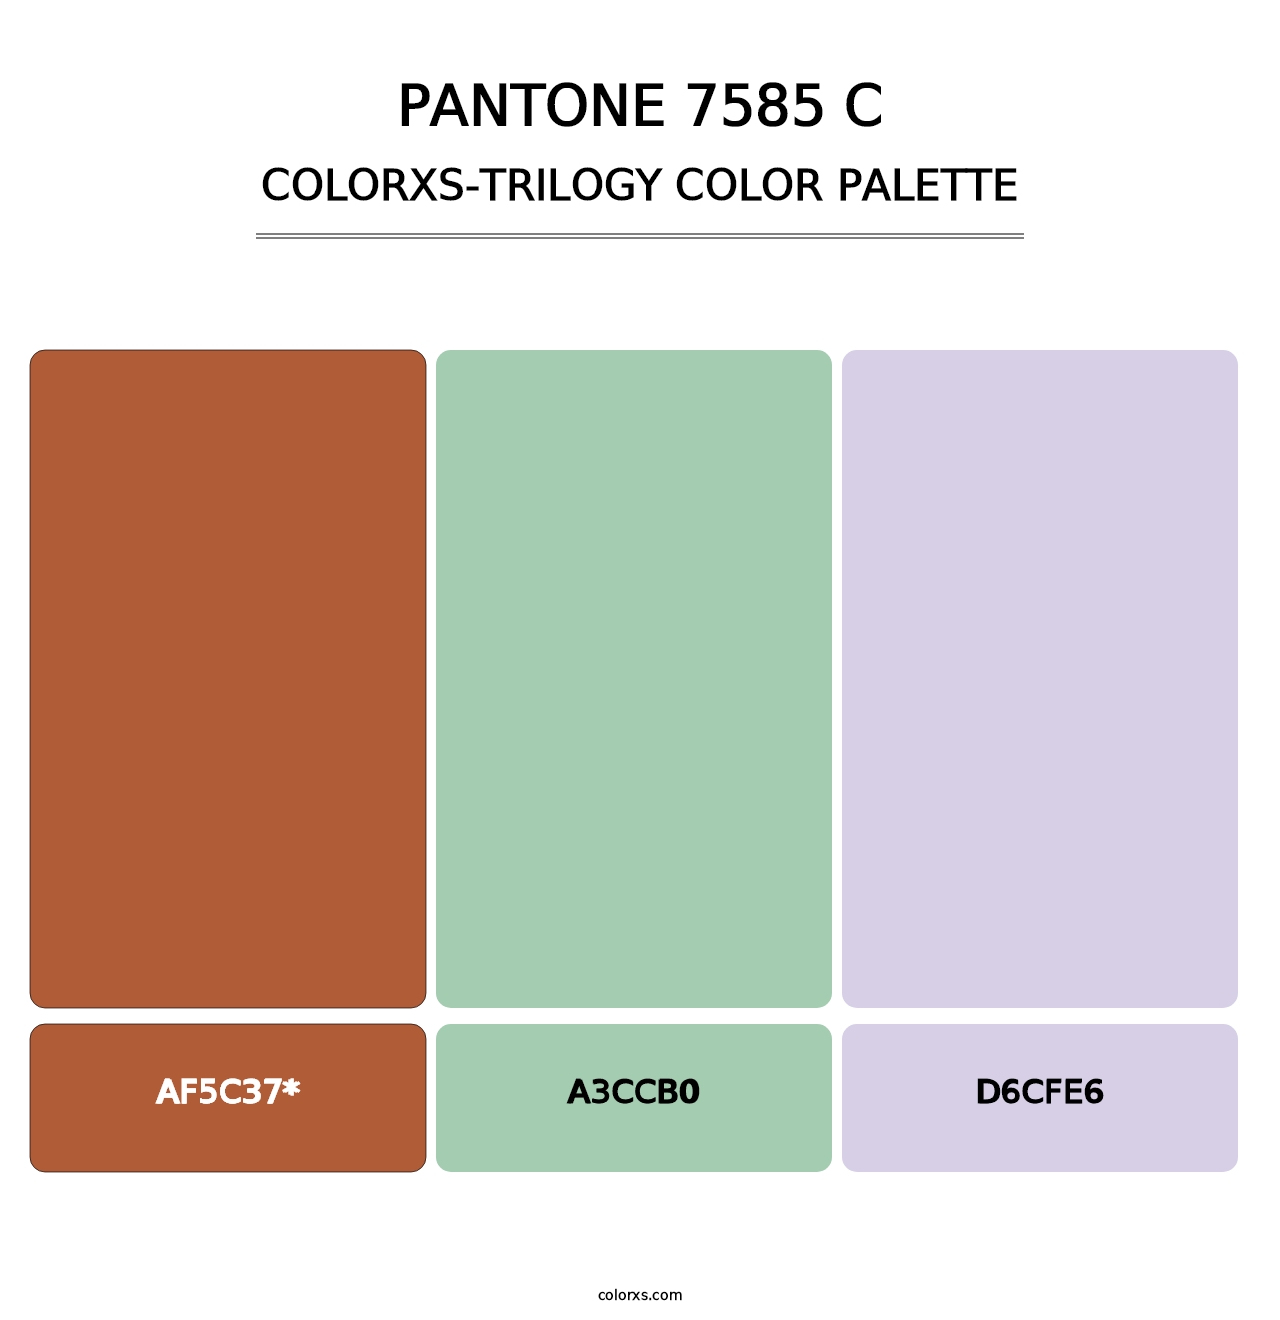 PANTONE 7585 C - Colorxs Trilogy Palette